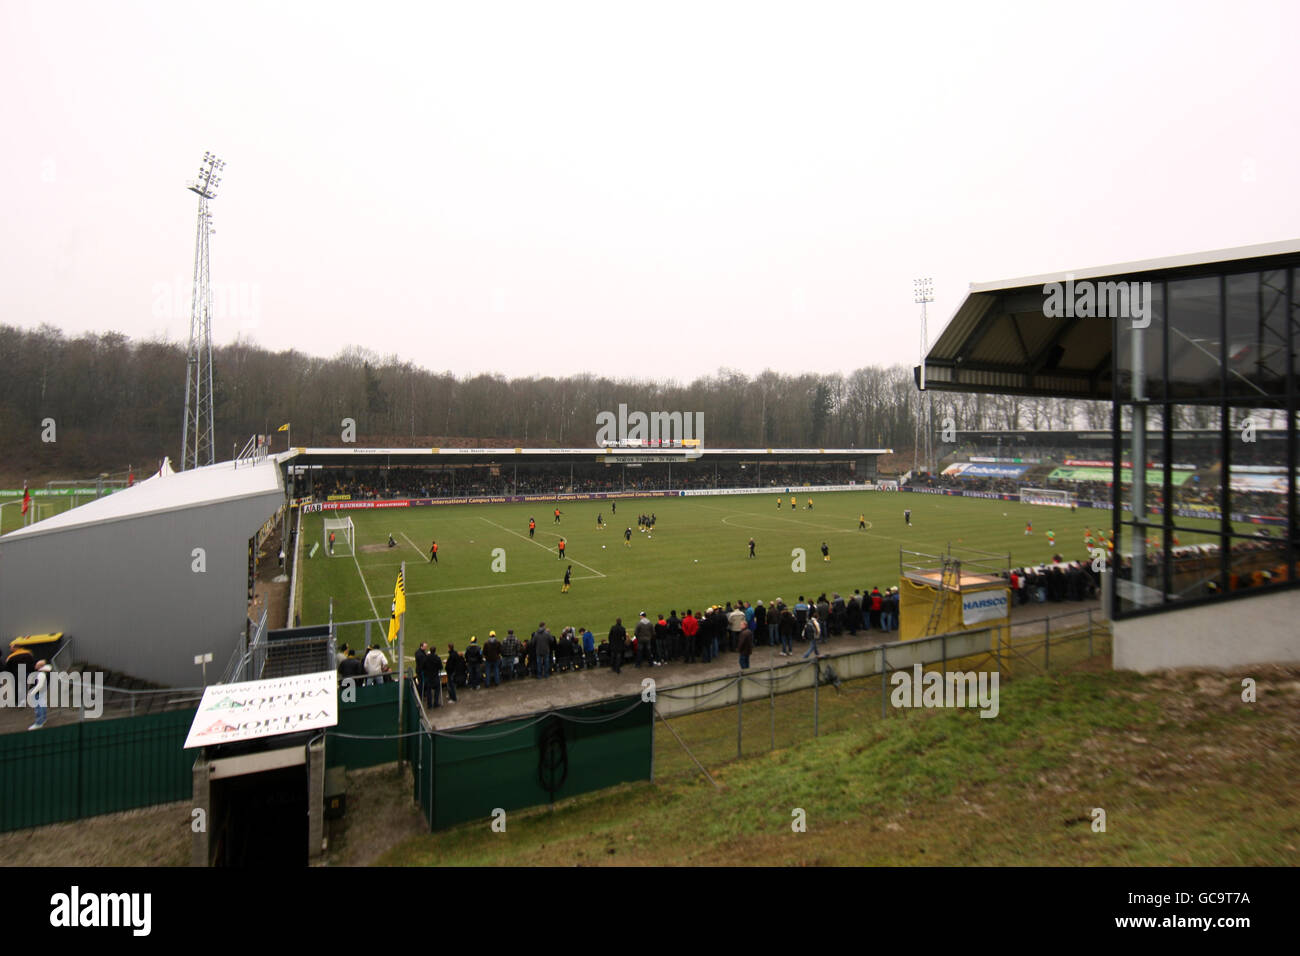 Soccer - Dutch Eredivisie - VVV Venlo v Vitesse Arnhem - De Koel. General view of the Stadion De Koel Stock Photo